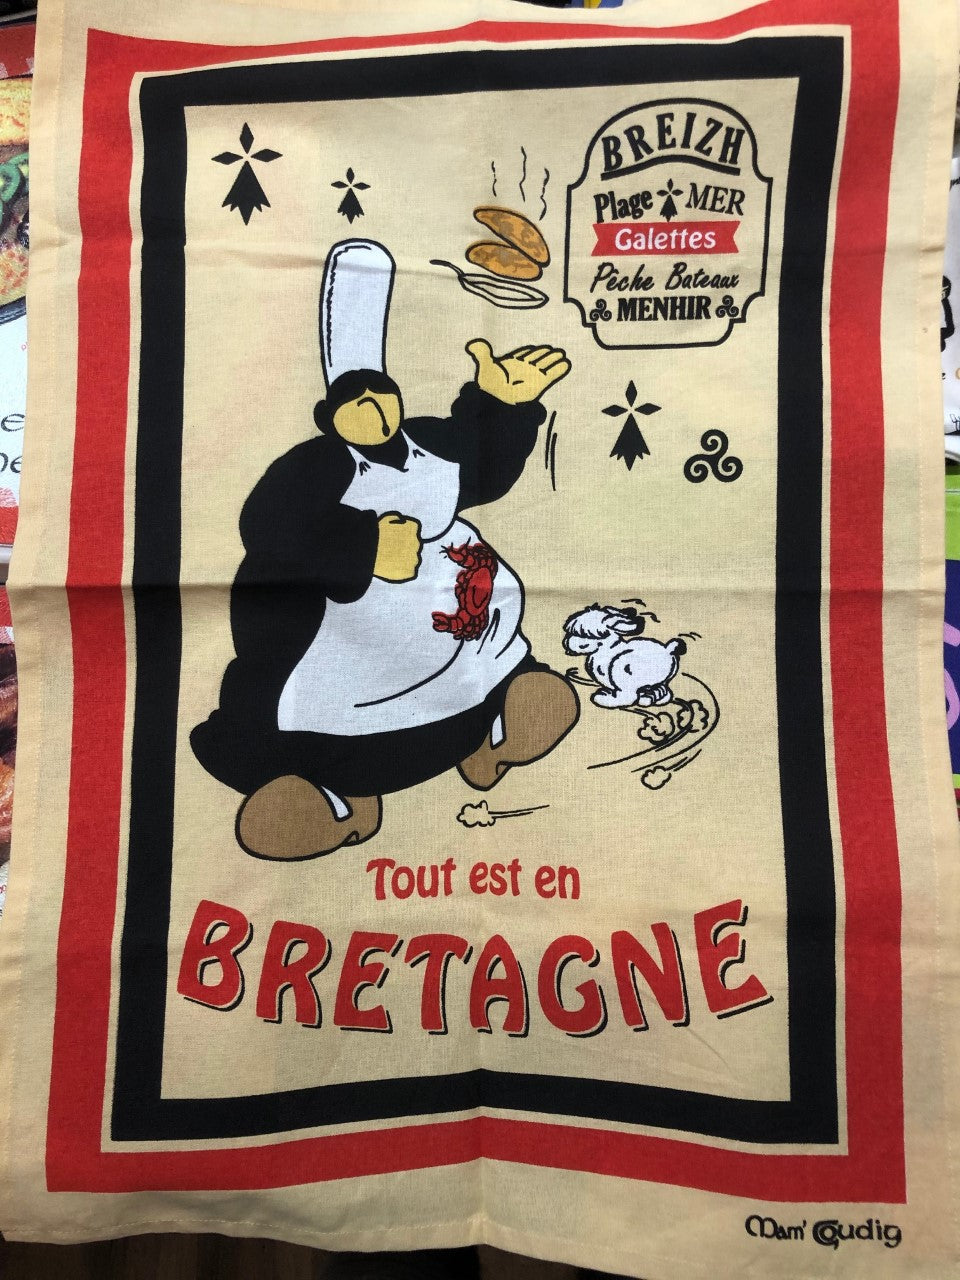 Torchon Mam Goudig "Tout est en Bretagne"